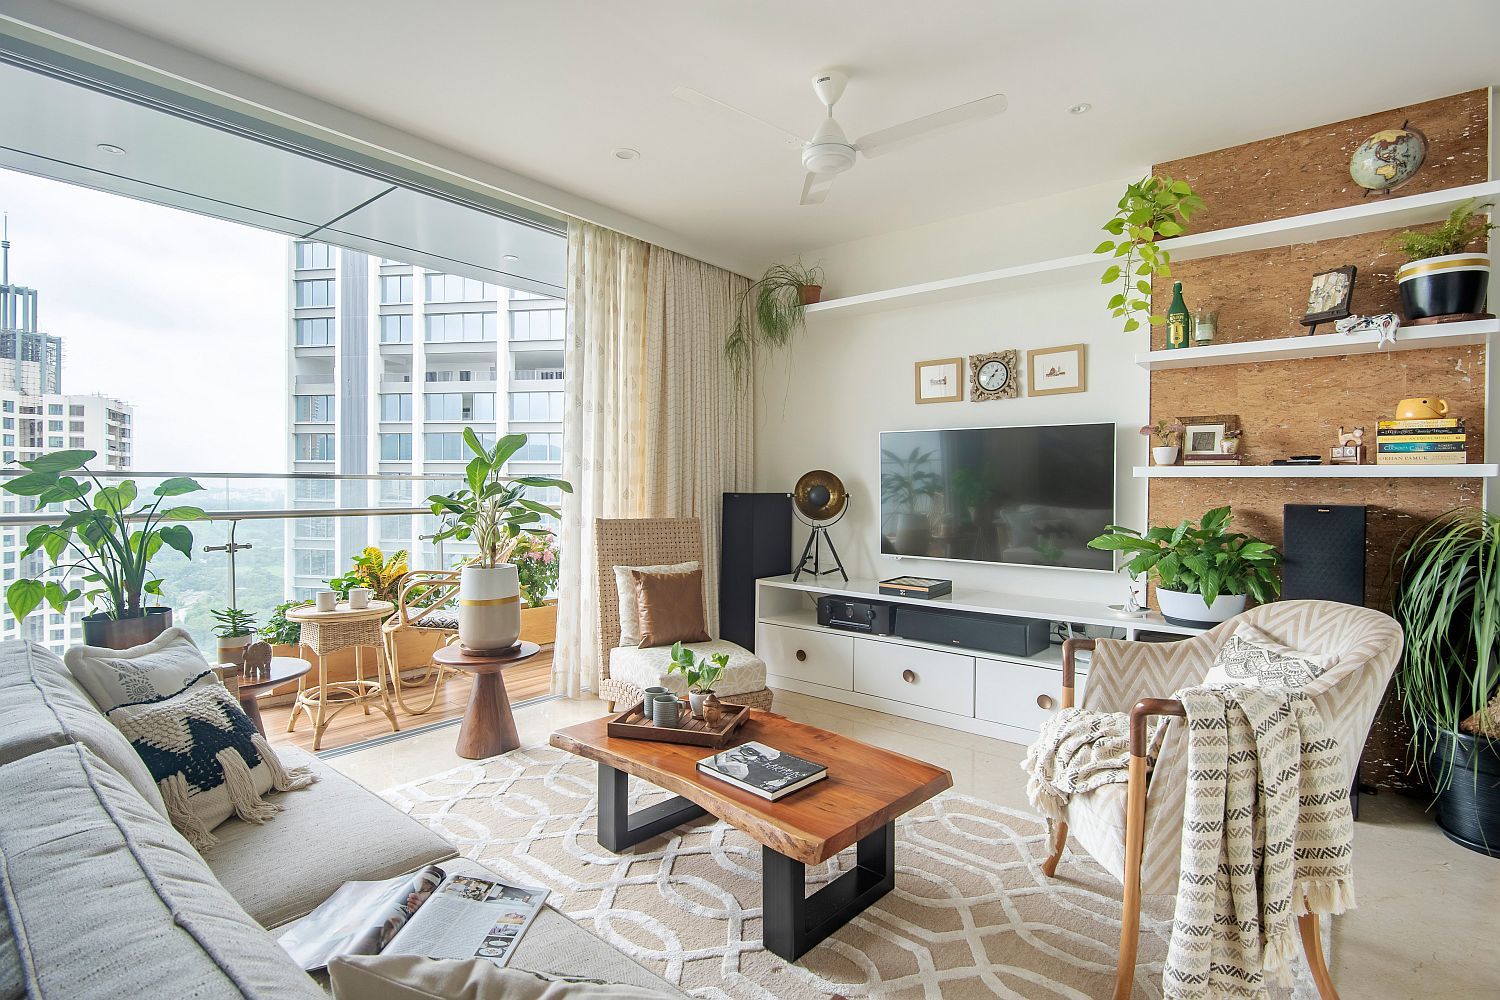 Thiết kế căn hộ phong cách tropical với những chất liệu đặc trưng từ tự nhiên